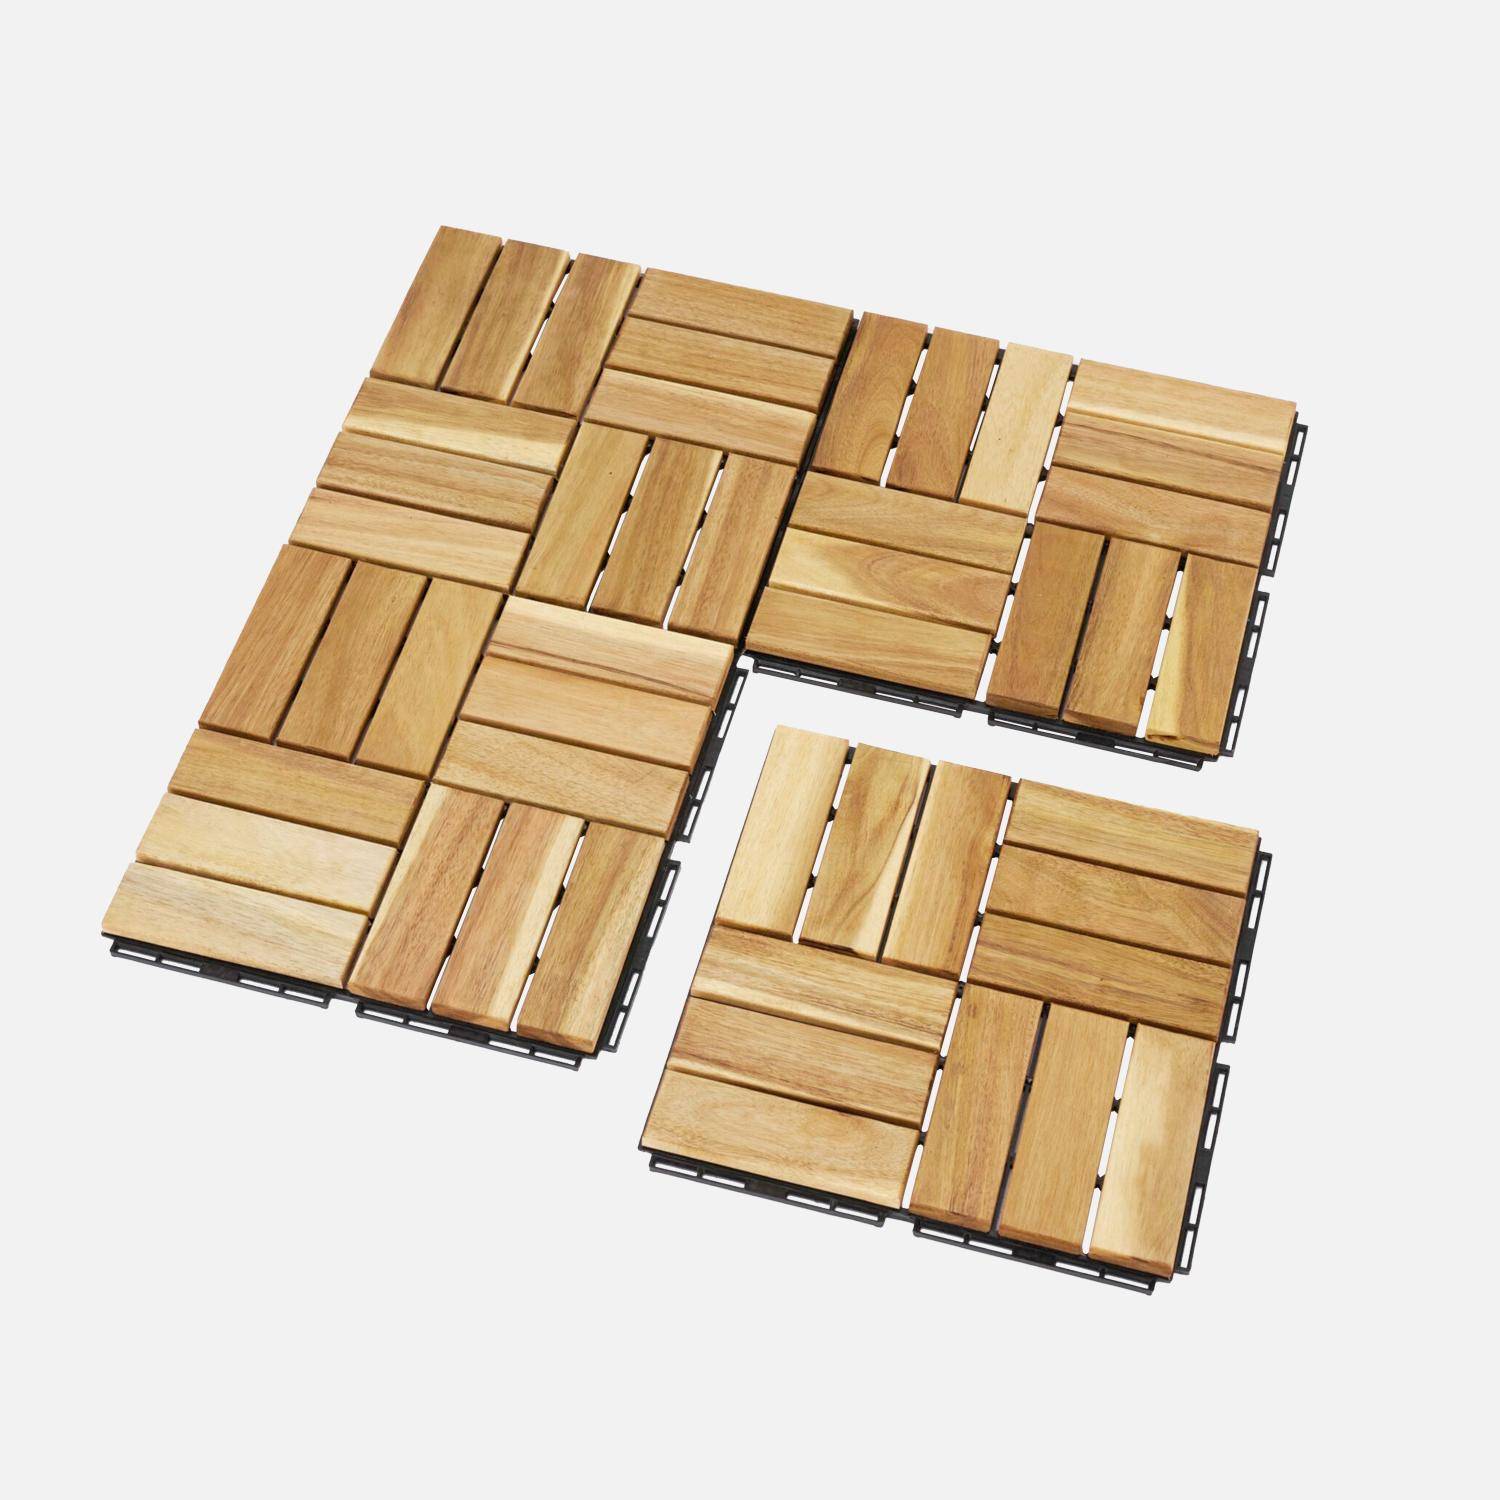 Lote de 36 ladrilhos de madeira de acácia para decks 30x30cm, padrão quadrado, encaixáveis Photo3